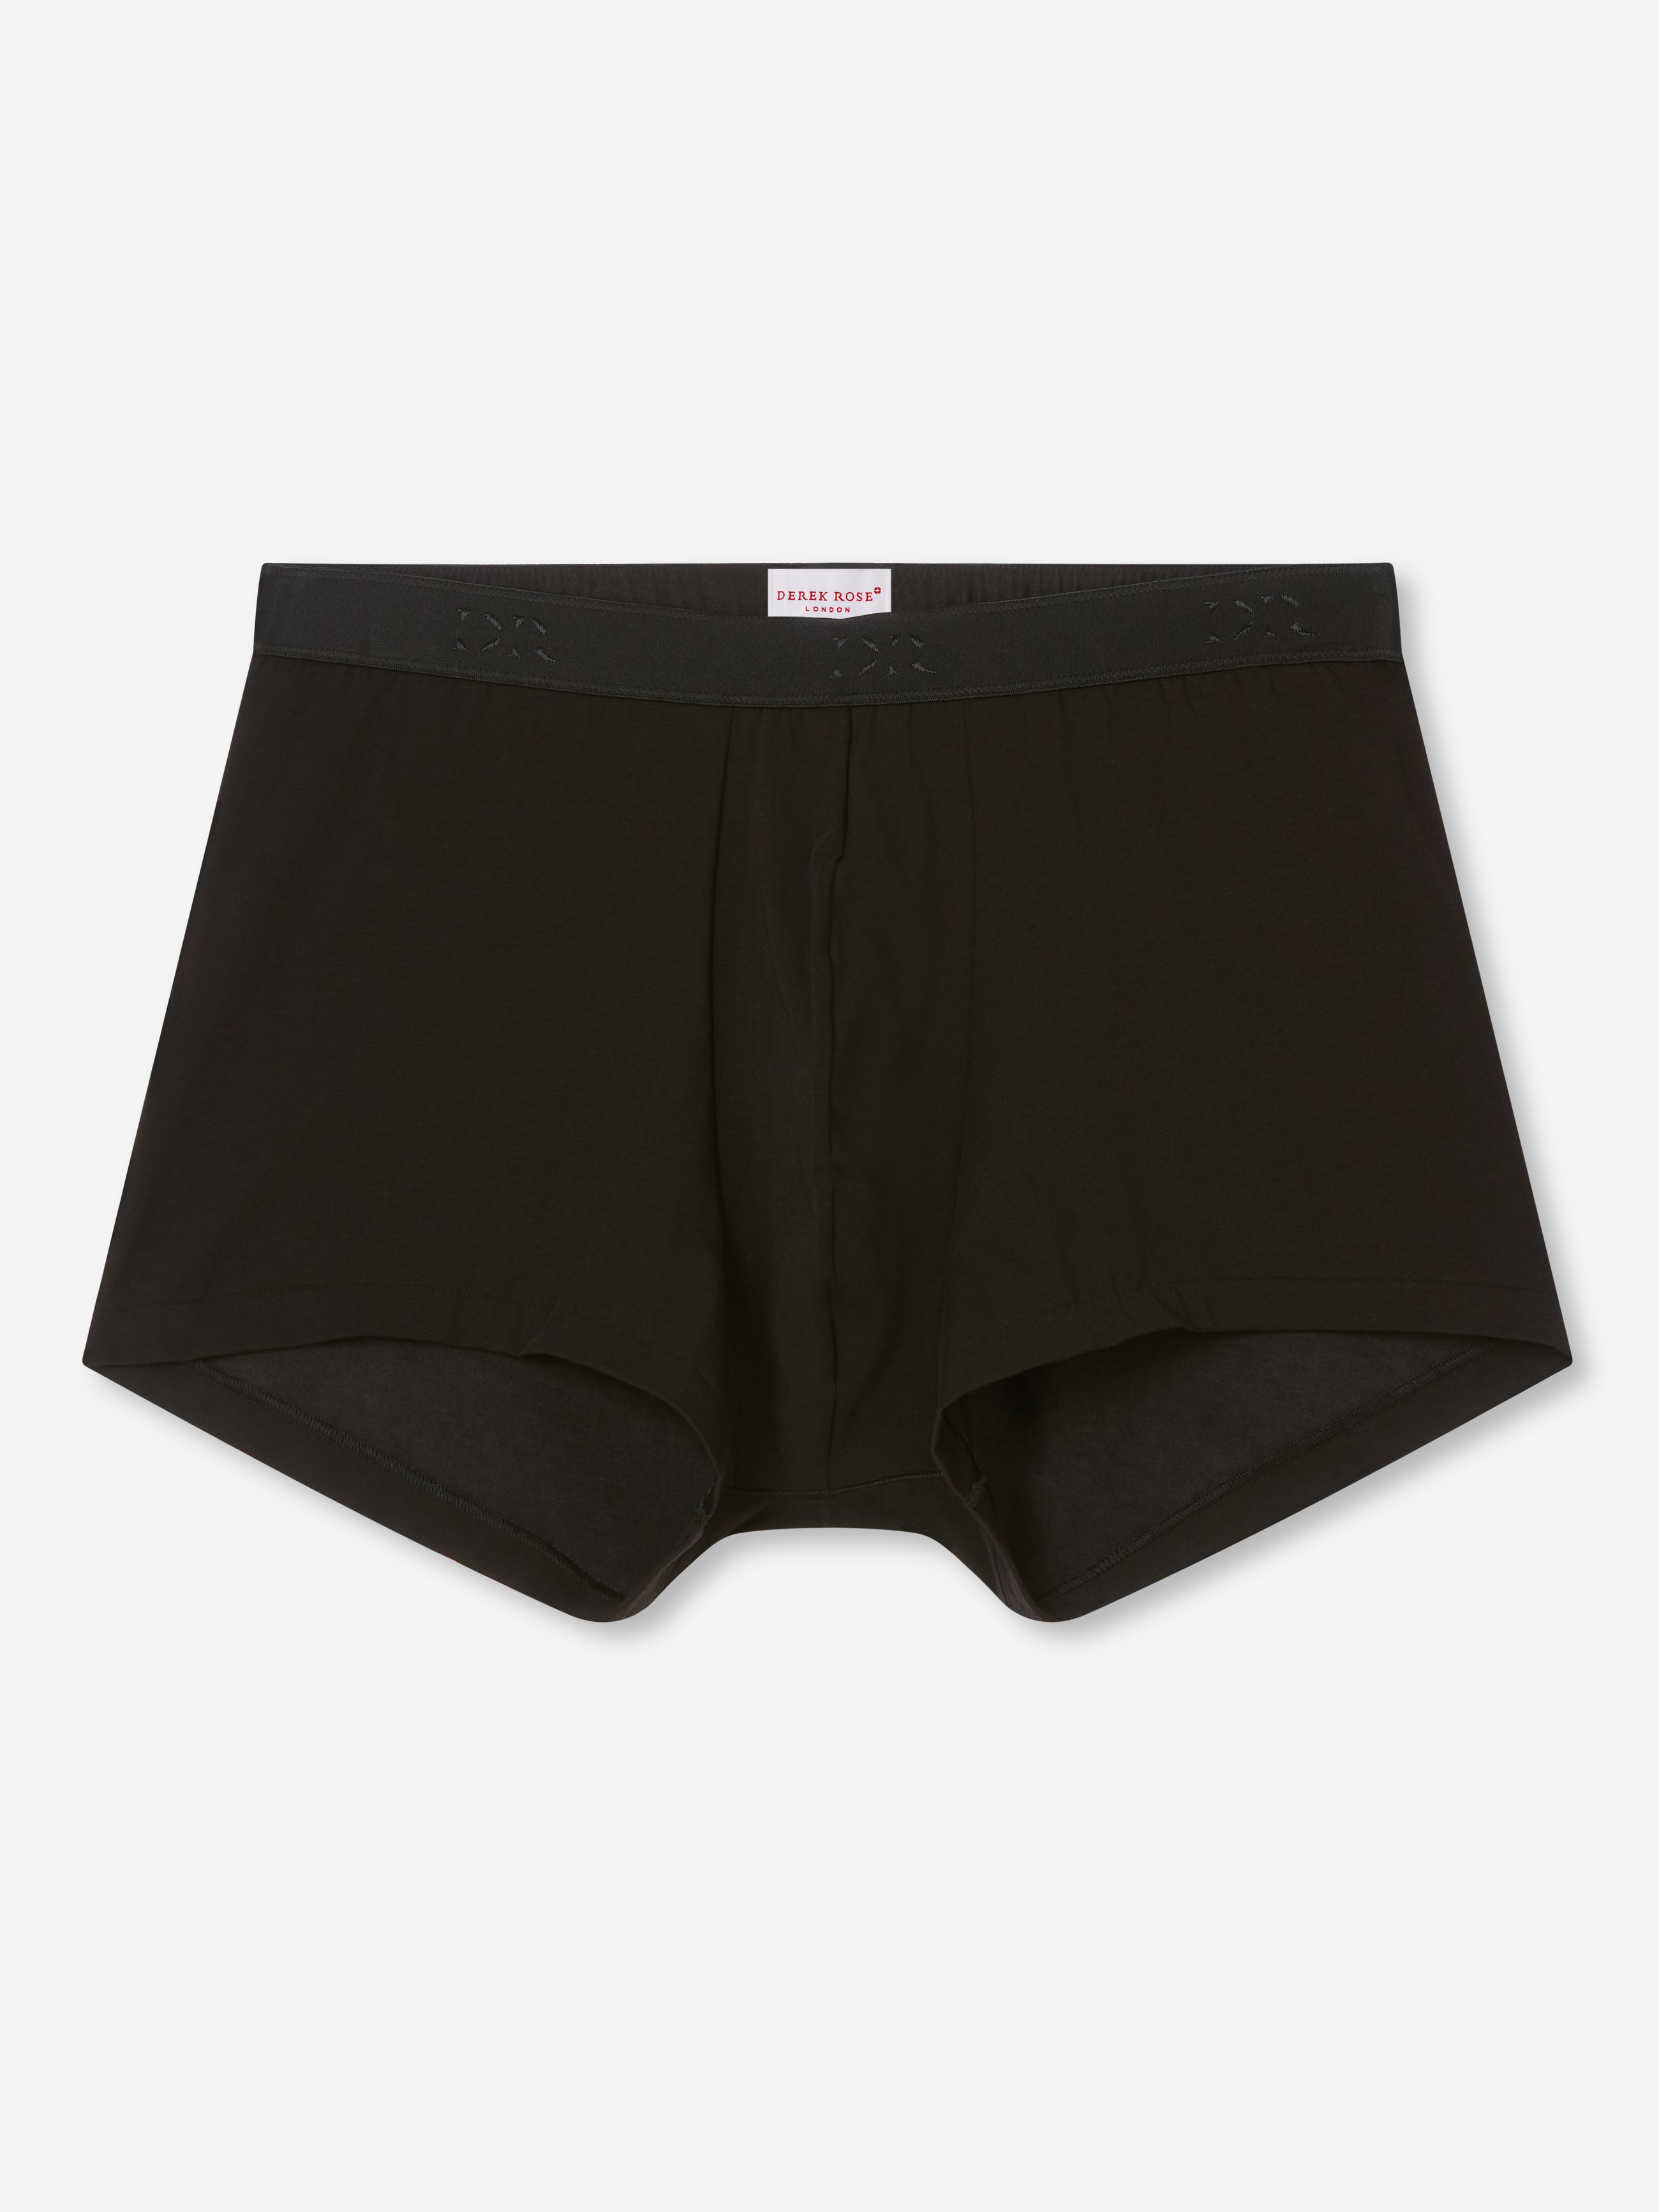 Buy der Mens Boxer Briefs Pro Cotton Sports Underwear (Small, Black) Online  at desertcartIreland